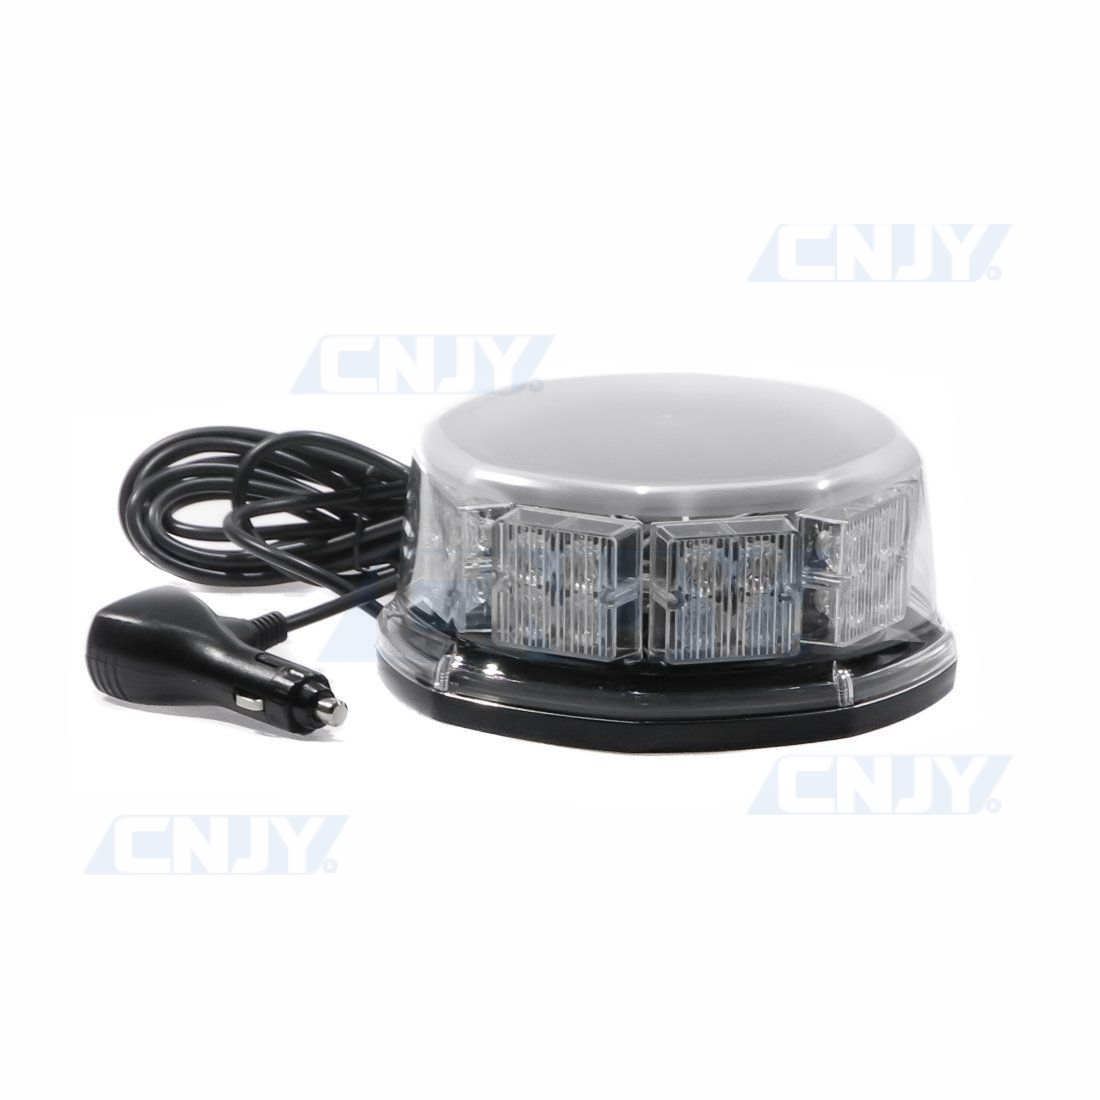 Gyrophare LED avec Base Magnétique pour Véhicules 12V avec Prise